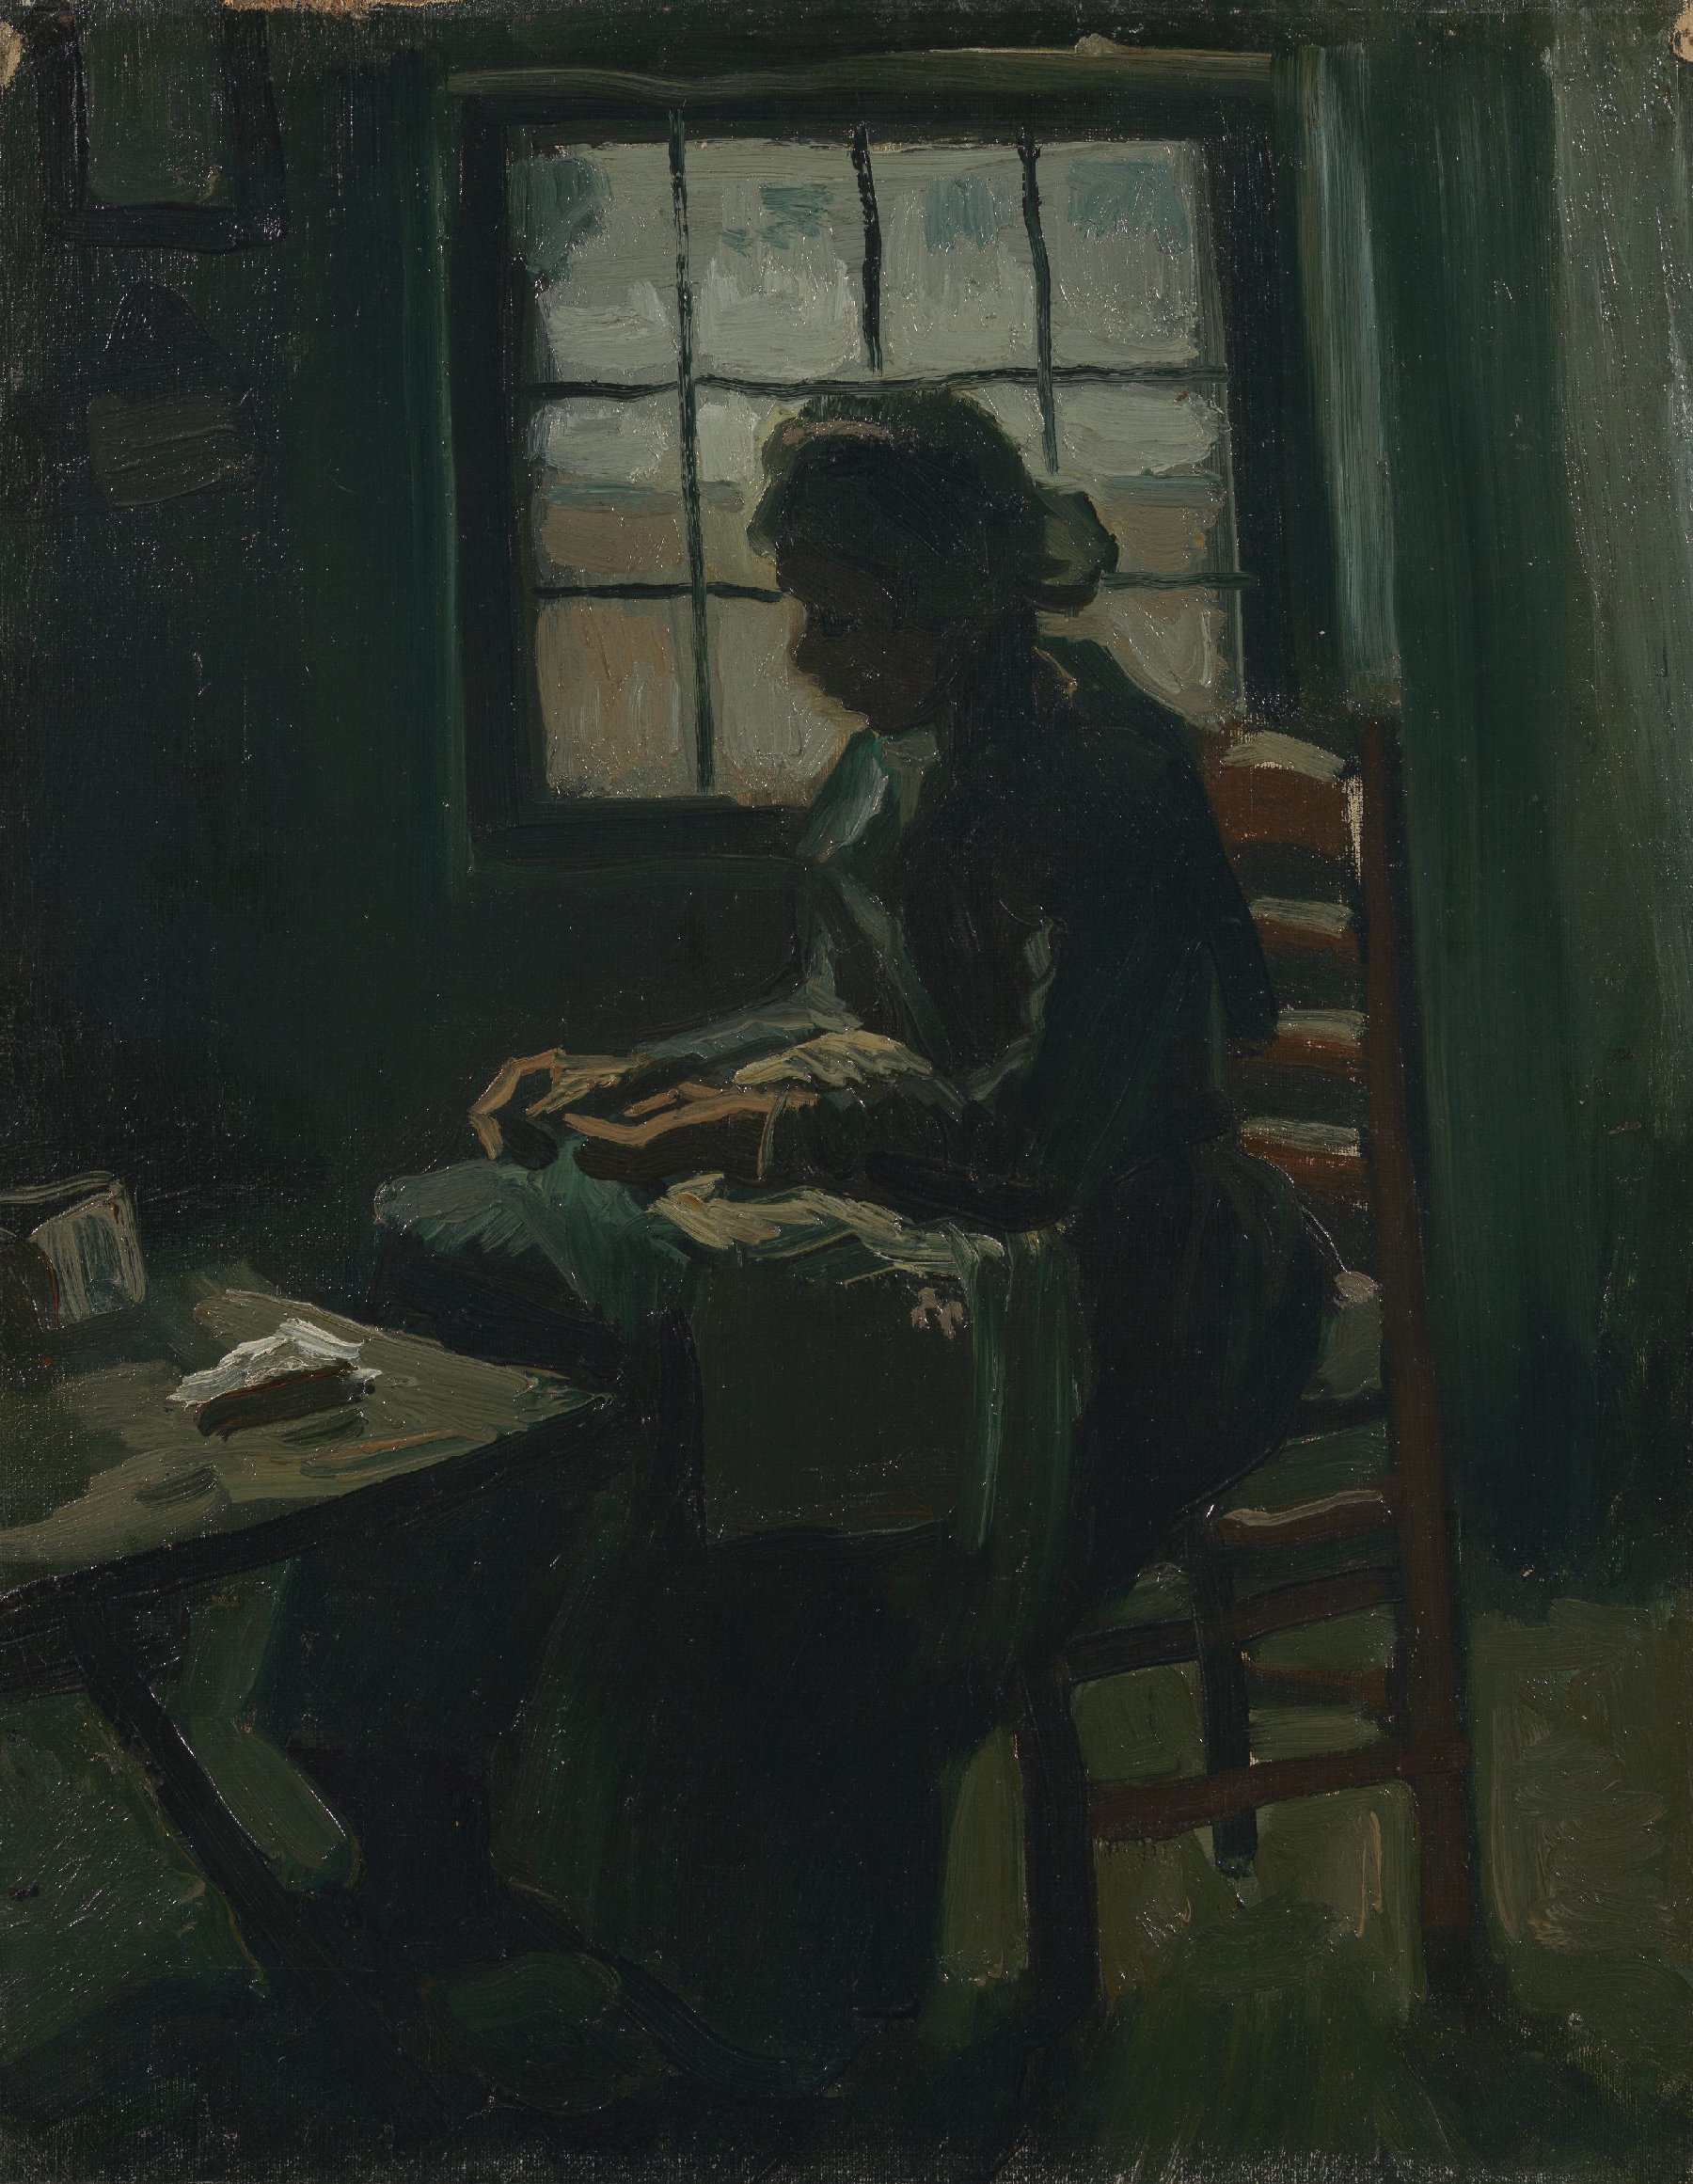 Naaiende vrouw Vincent van Gogh (1853 - 1890), Nuenen, maart-april 1885